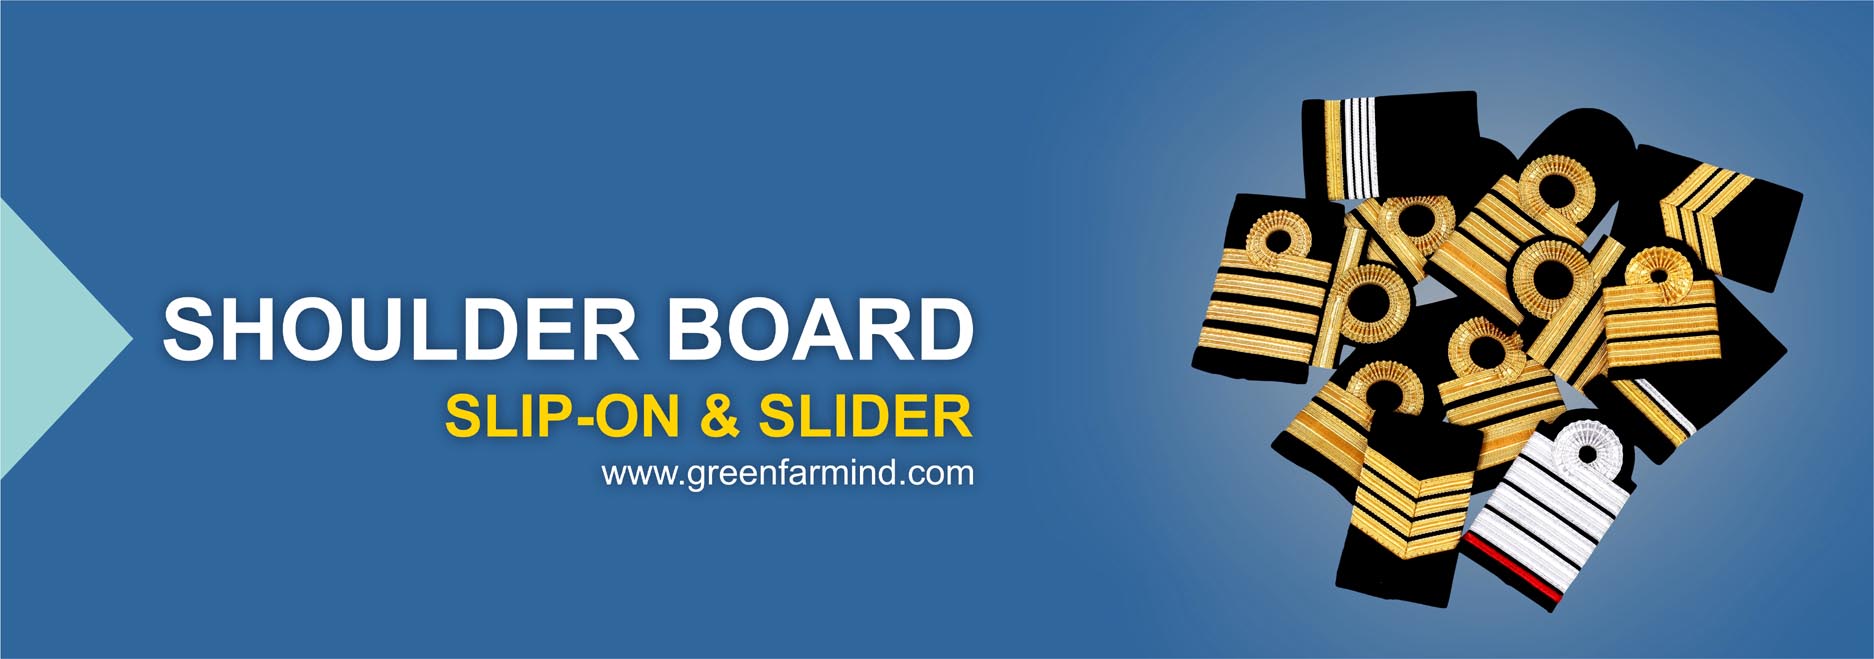 Shoulder Board, Slip-on & Slider